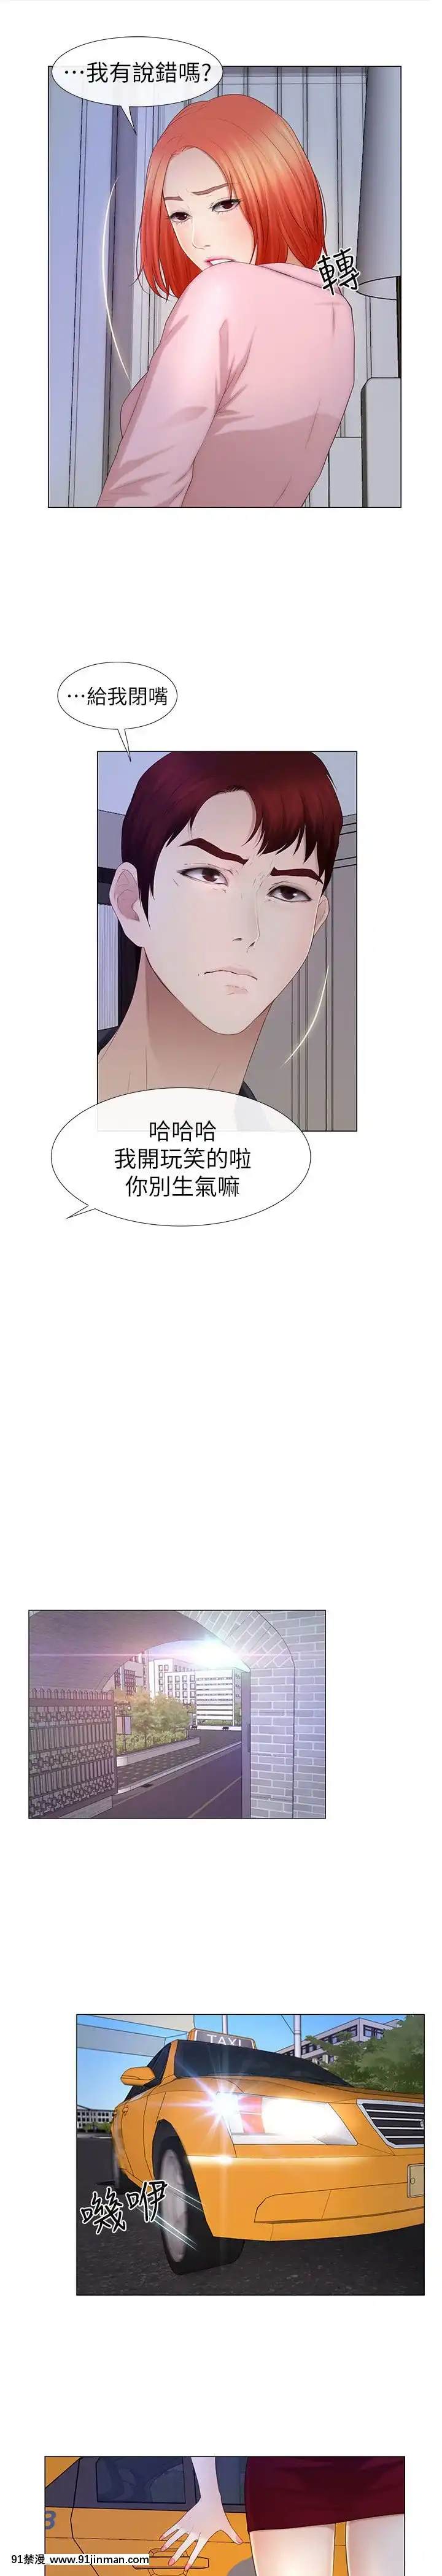 學妹別放肆1 25話[完結]   Nữ sinh đừng tự phụ 1, chương 25【truyện tranh lương sơn bá chúc anh đài tap 4】